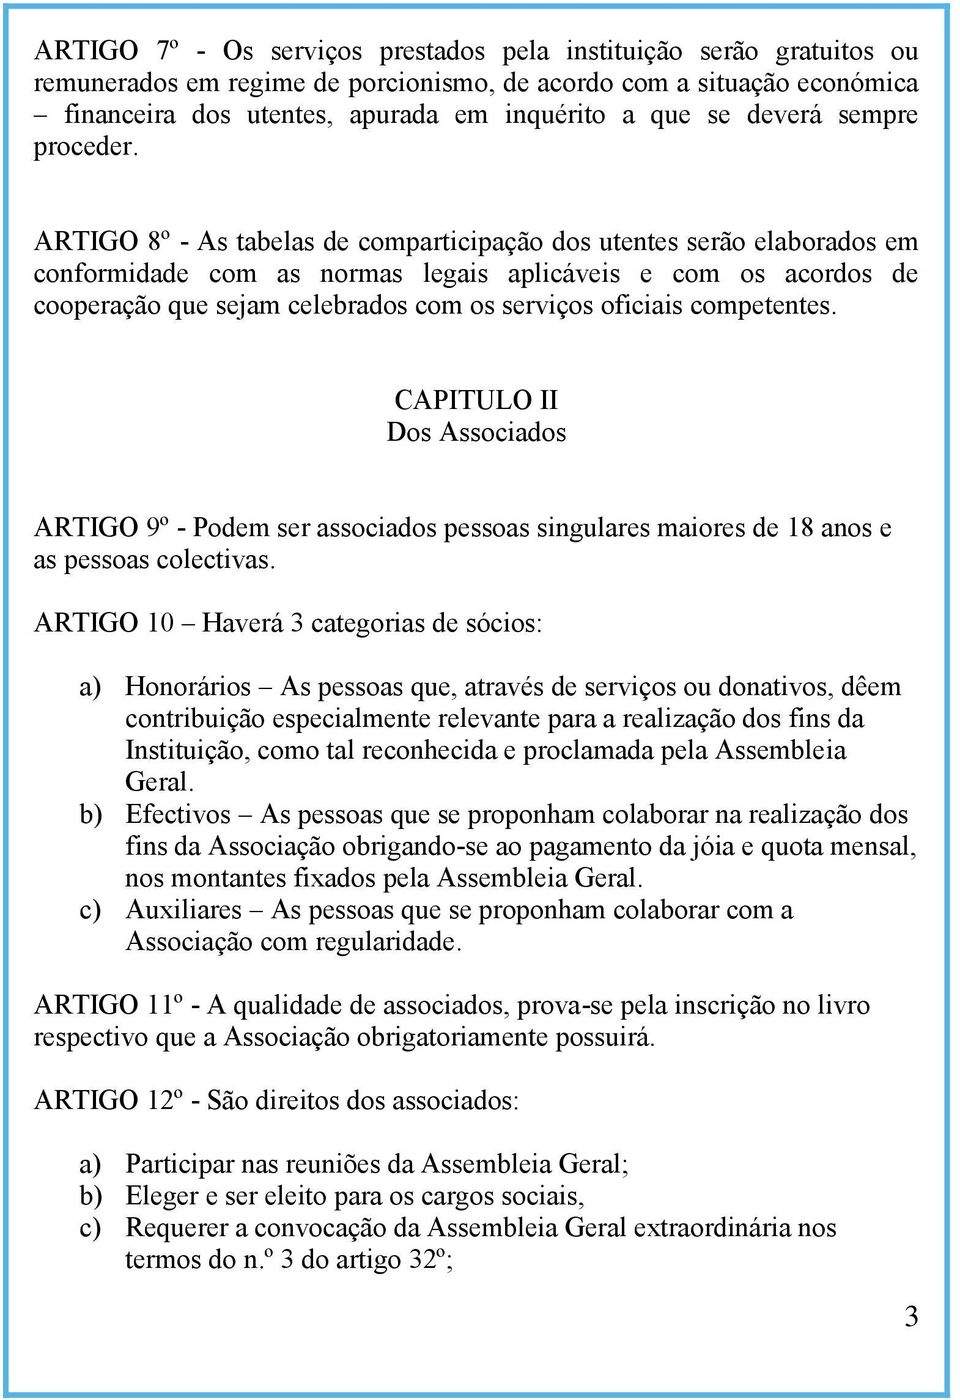 ARTIGO 8º - As tabelas de comparticipação dos utentes serão elaborados em conformidade com as normas legais aplicáveis e com os acordos de cooperação que sejam celebrados com os serviços oficiais